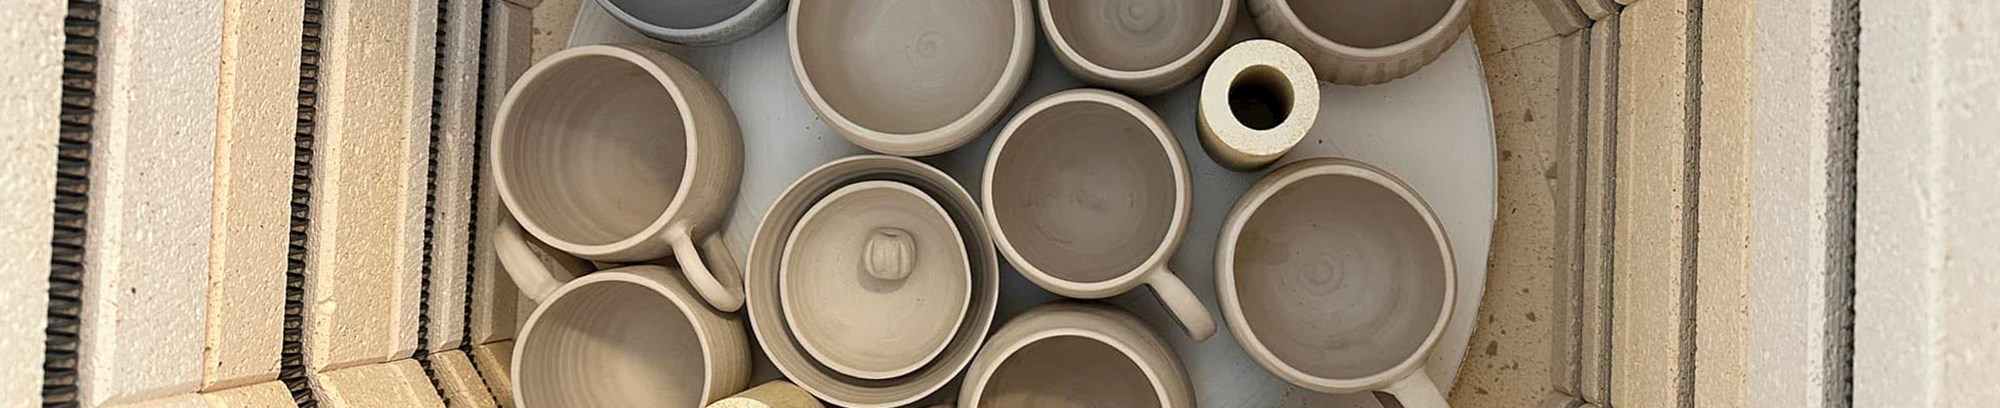 Keramik i en keramikovn i Majbrits værksted